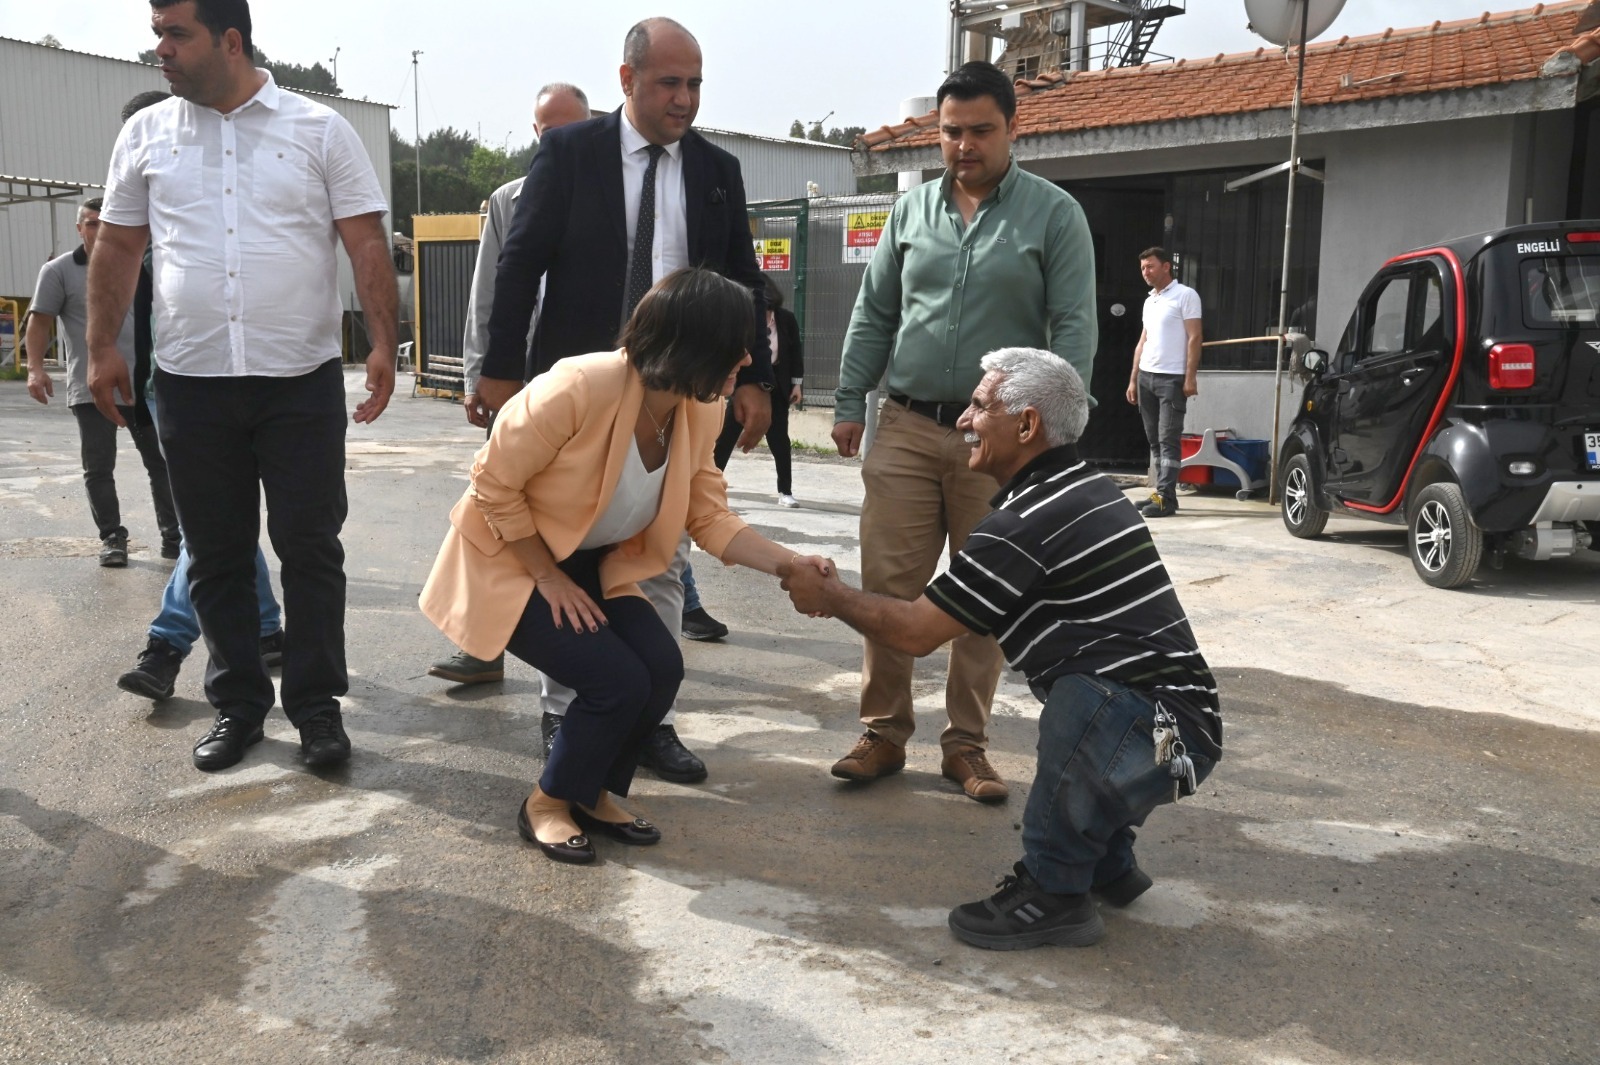 karabağlar belediyesi, Helil İnay Kınay Karabağlar Belediye Başkanı Helil Kınay, güne Fen İşleri Şantiyesi’nde emekçilerle bir araya gelerek başladı.